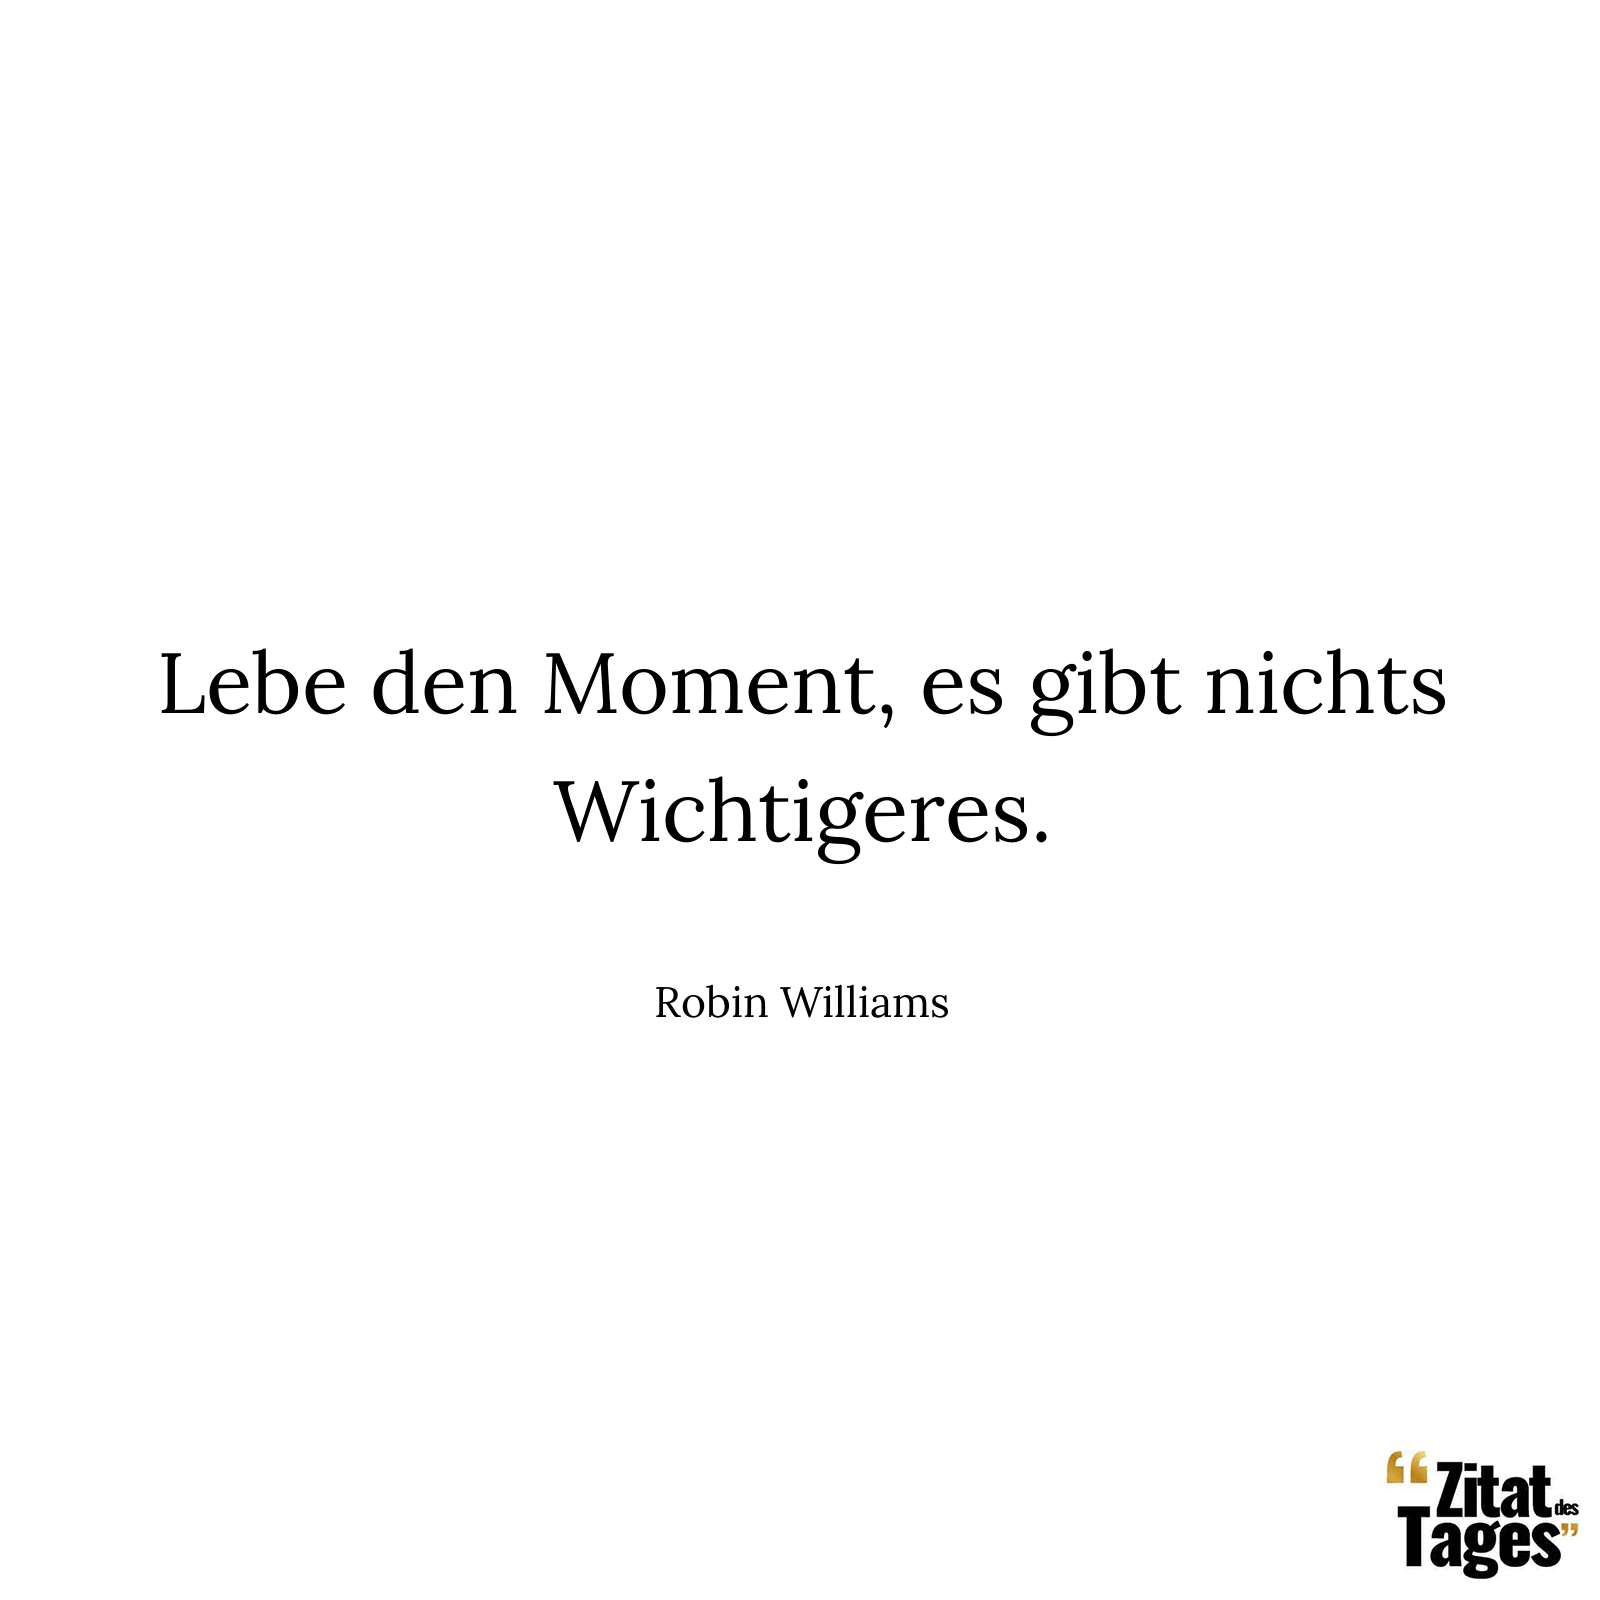 Lebe den Moment, es gibt nichts Wichtigeres. - Robin Williams